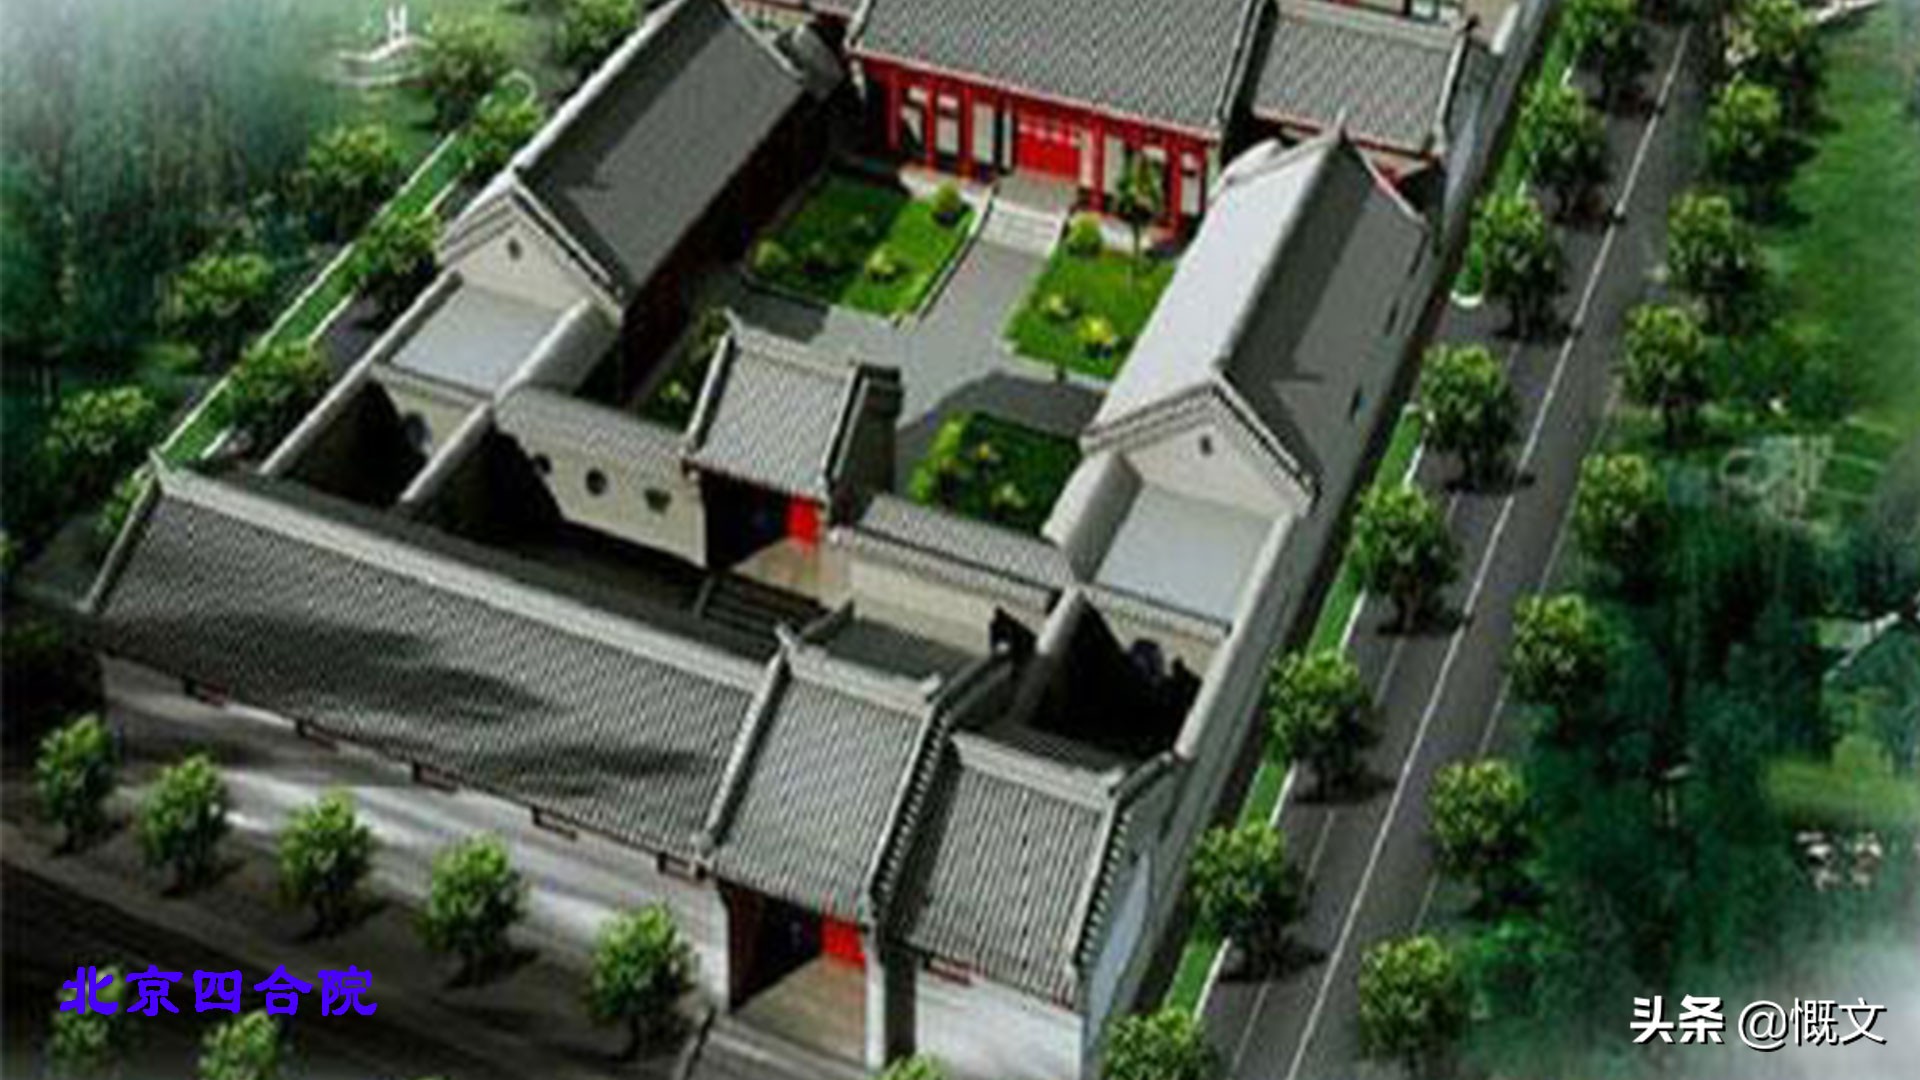 中国十大奇妙古民居！福建土楼和京城大院你更青睐哪个？